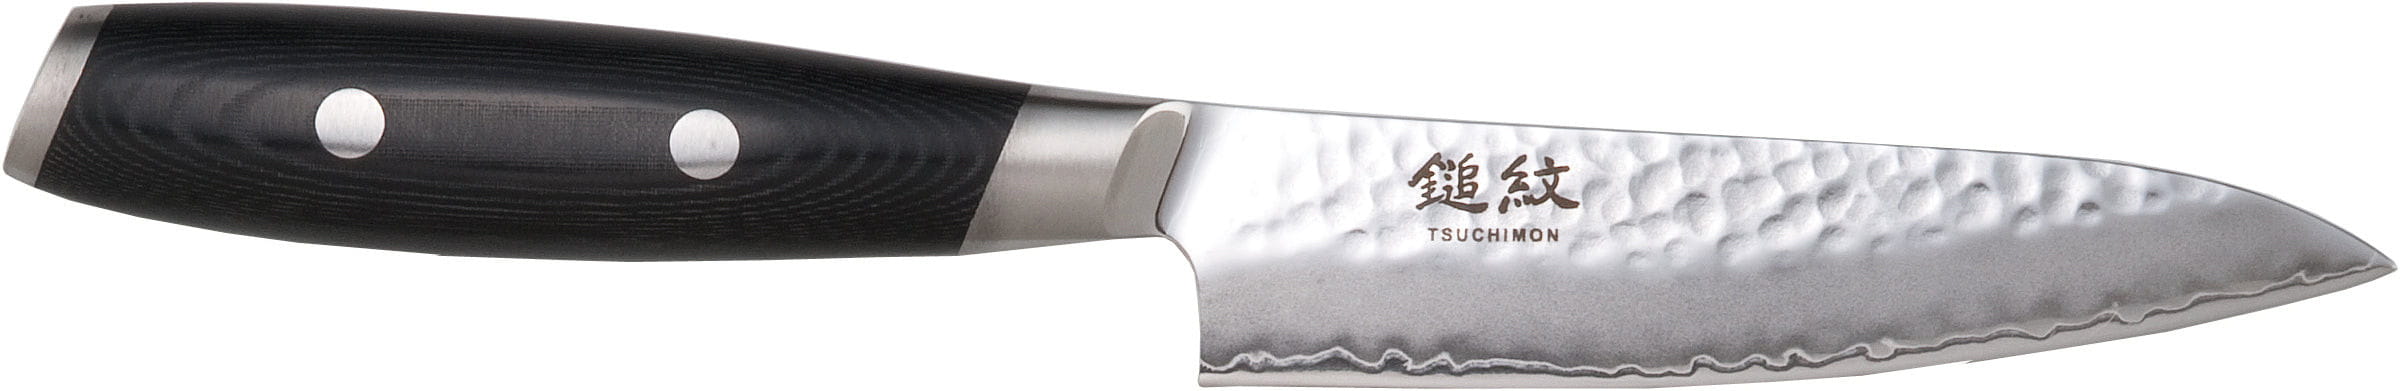 Yaxell Tsuuchimon Universal Knife, 12 cm